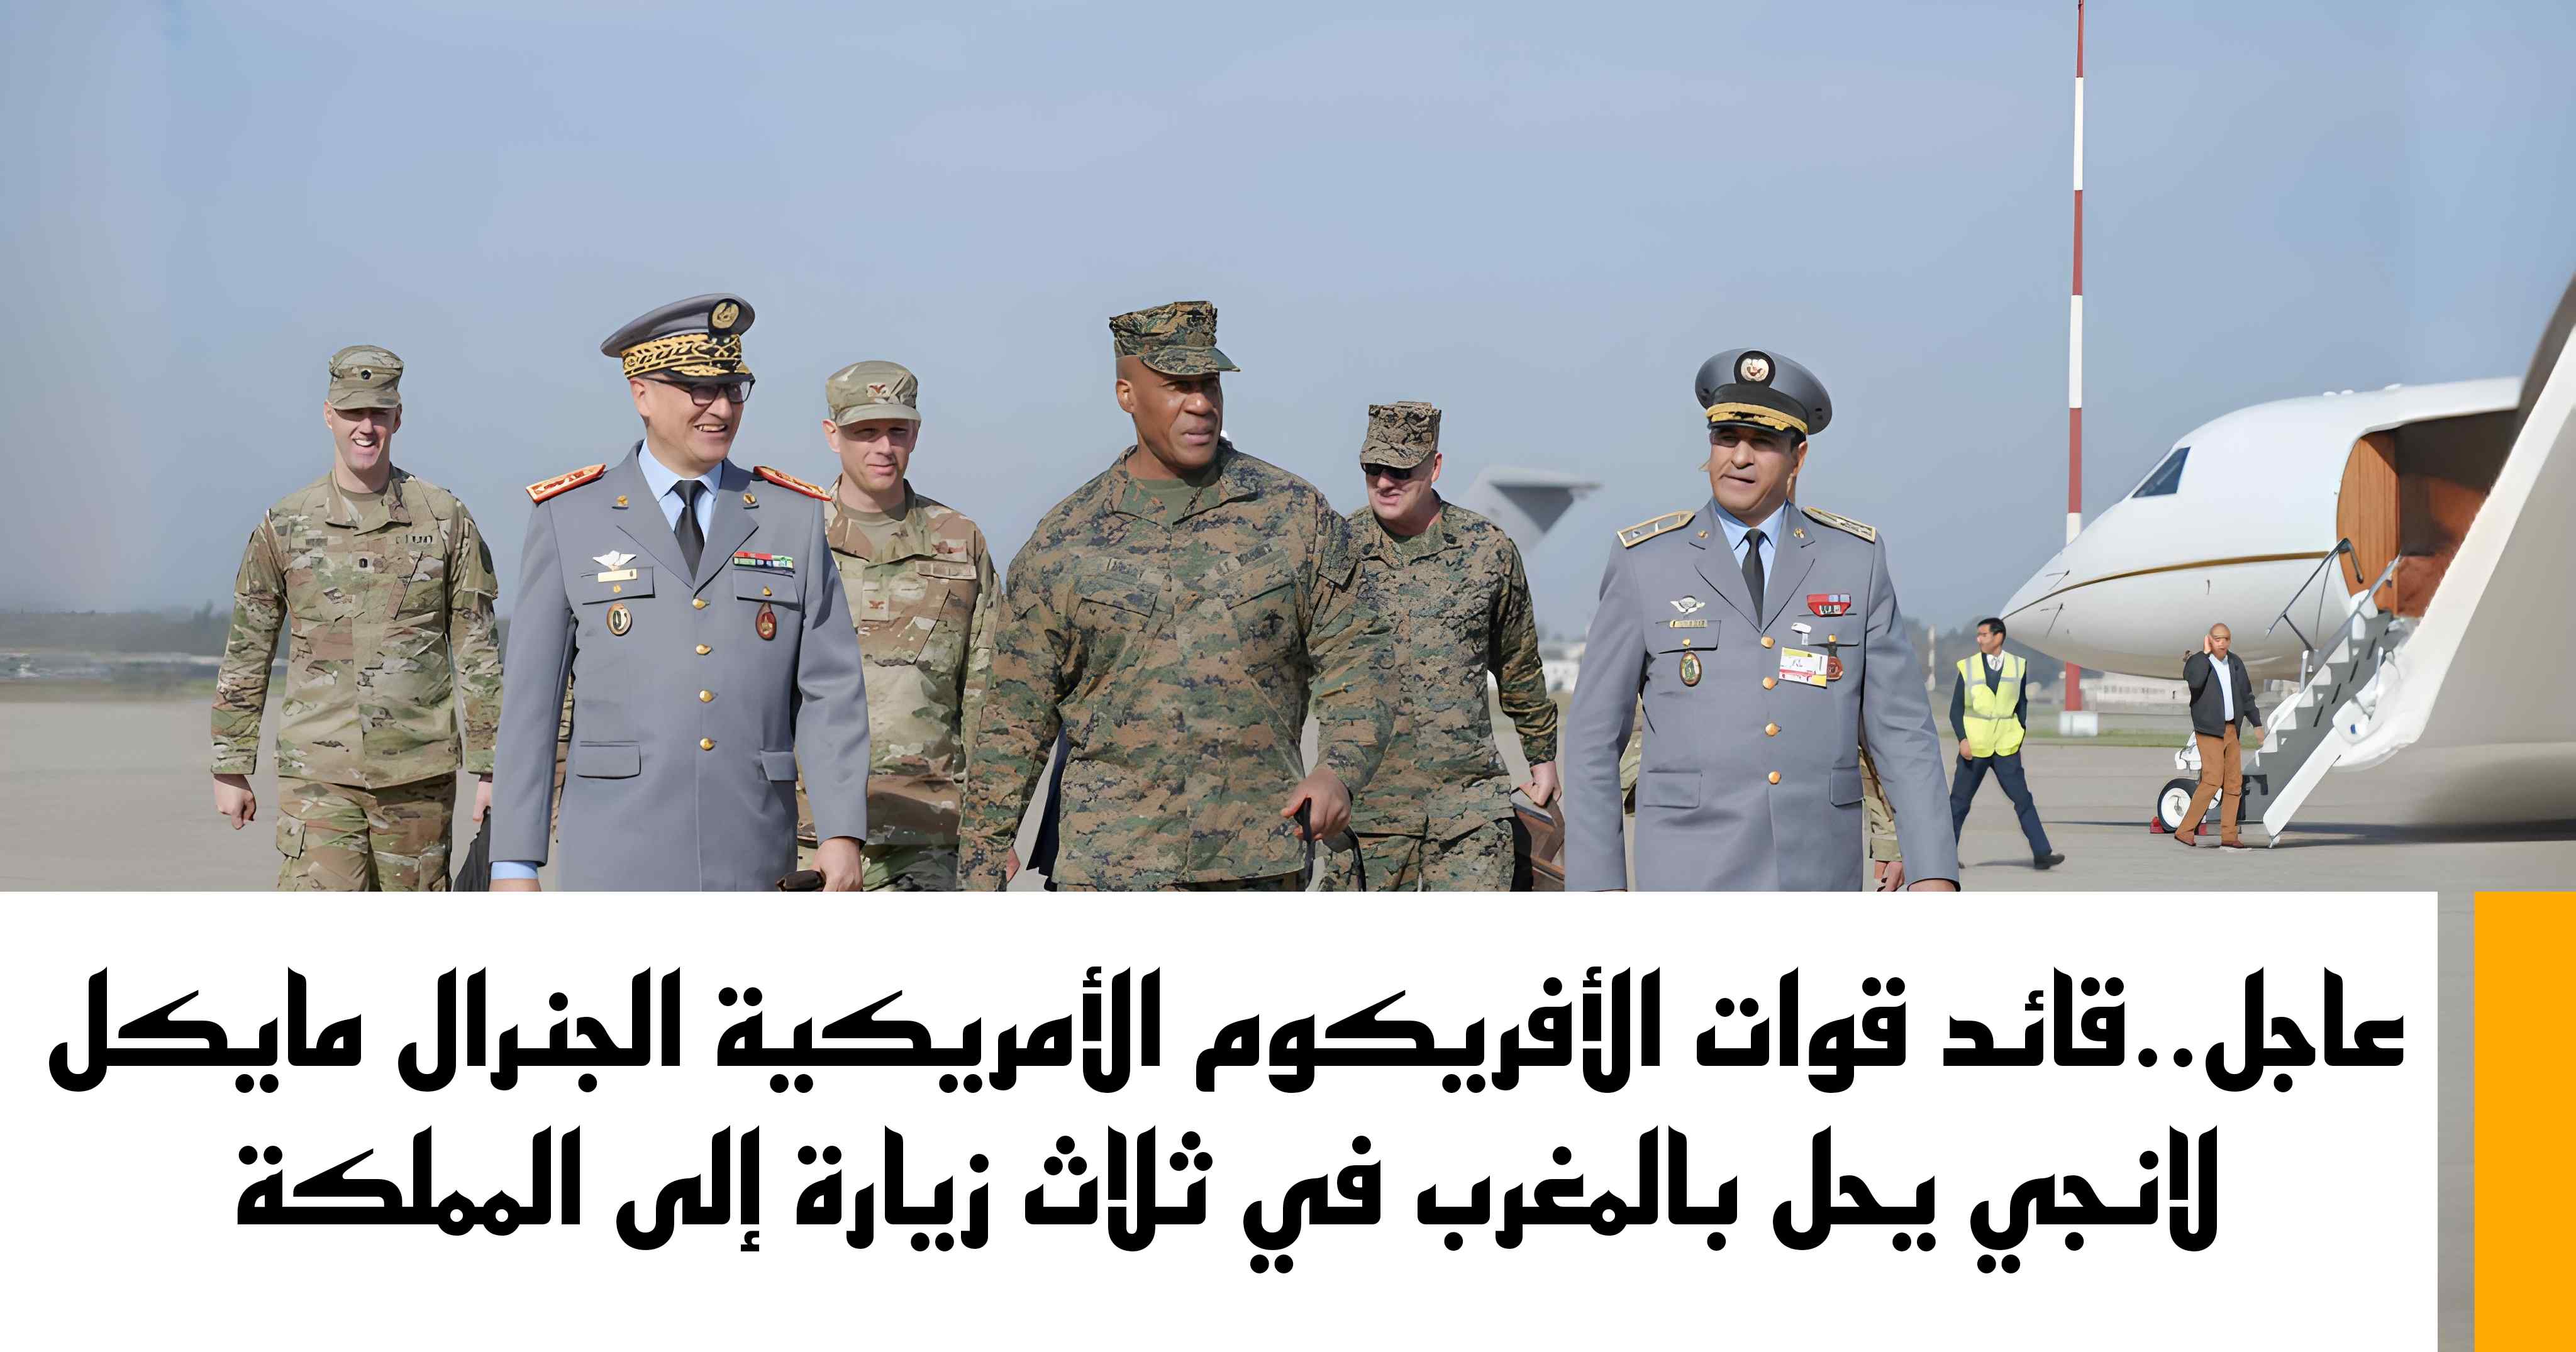 عاجل..قائد قوات الأفريكوم الأمريكية الجنرال مايكل لانجي يحل بالمغرب في ثلاث زيارة إلى المملكة